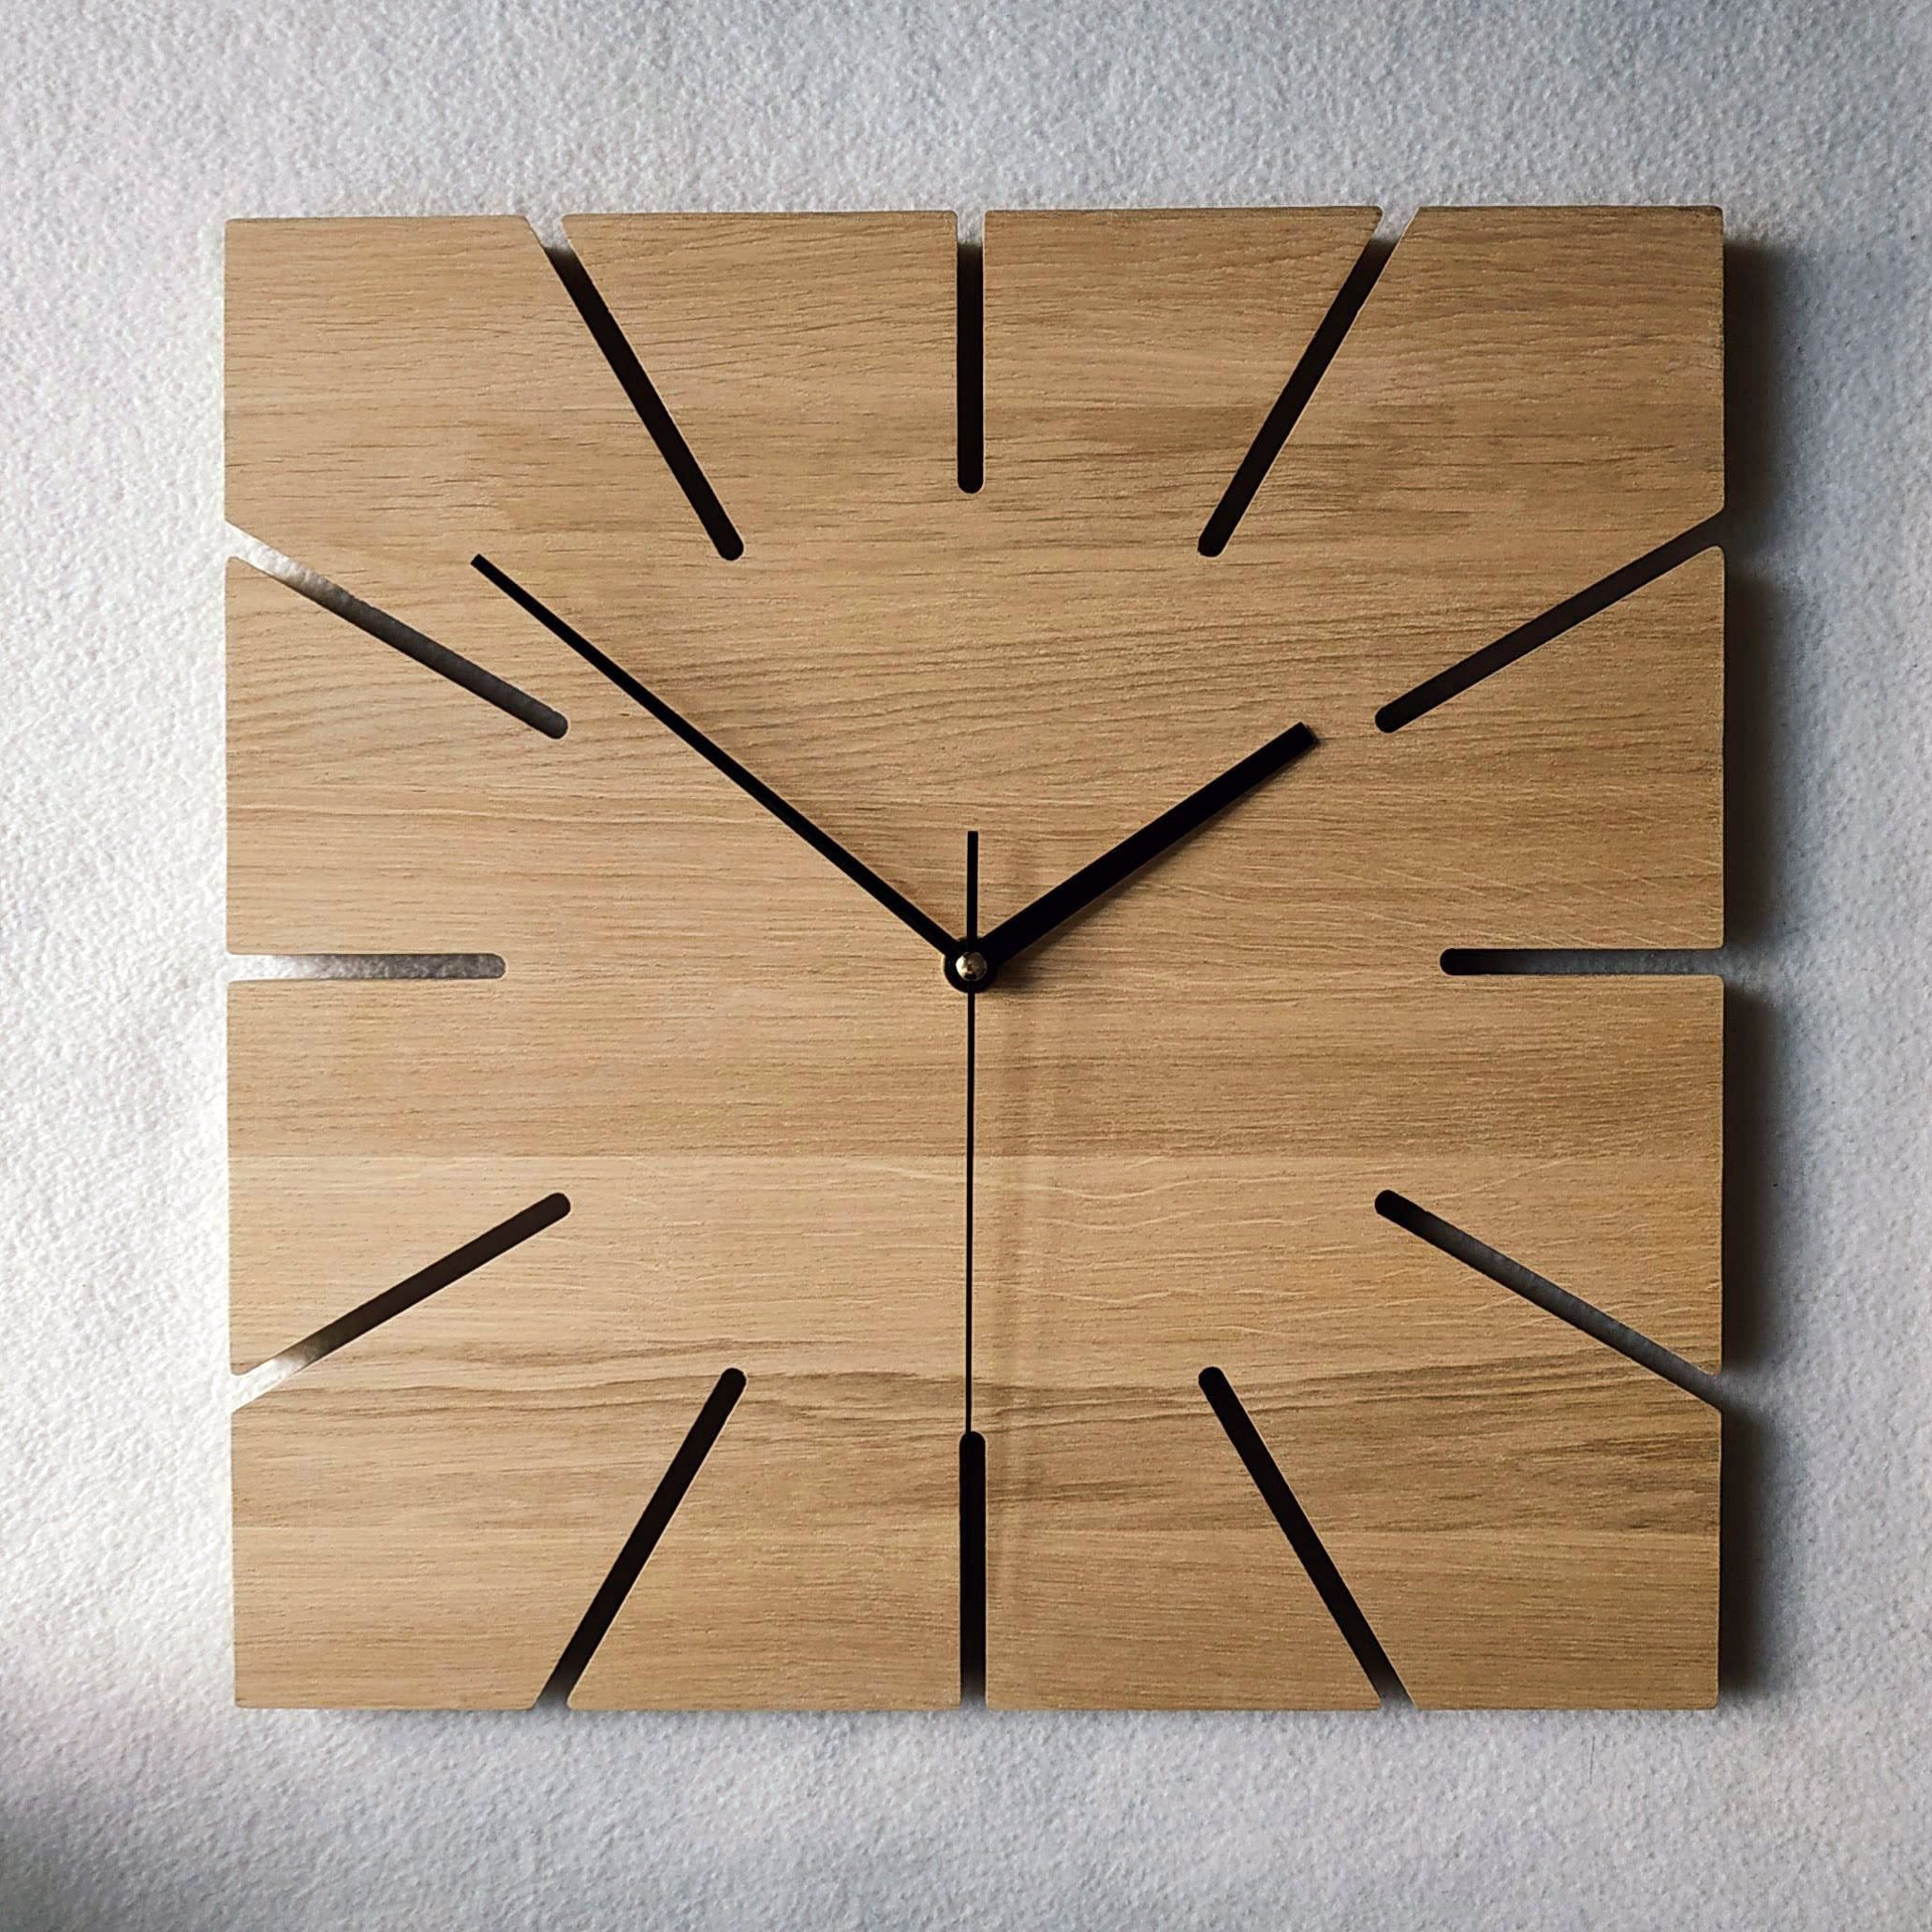 Designer Clocks: Timeless Pieces for Every Home